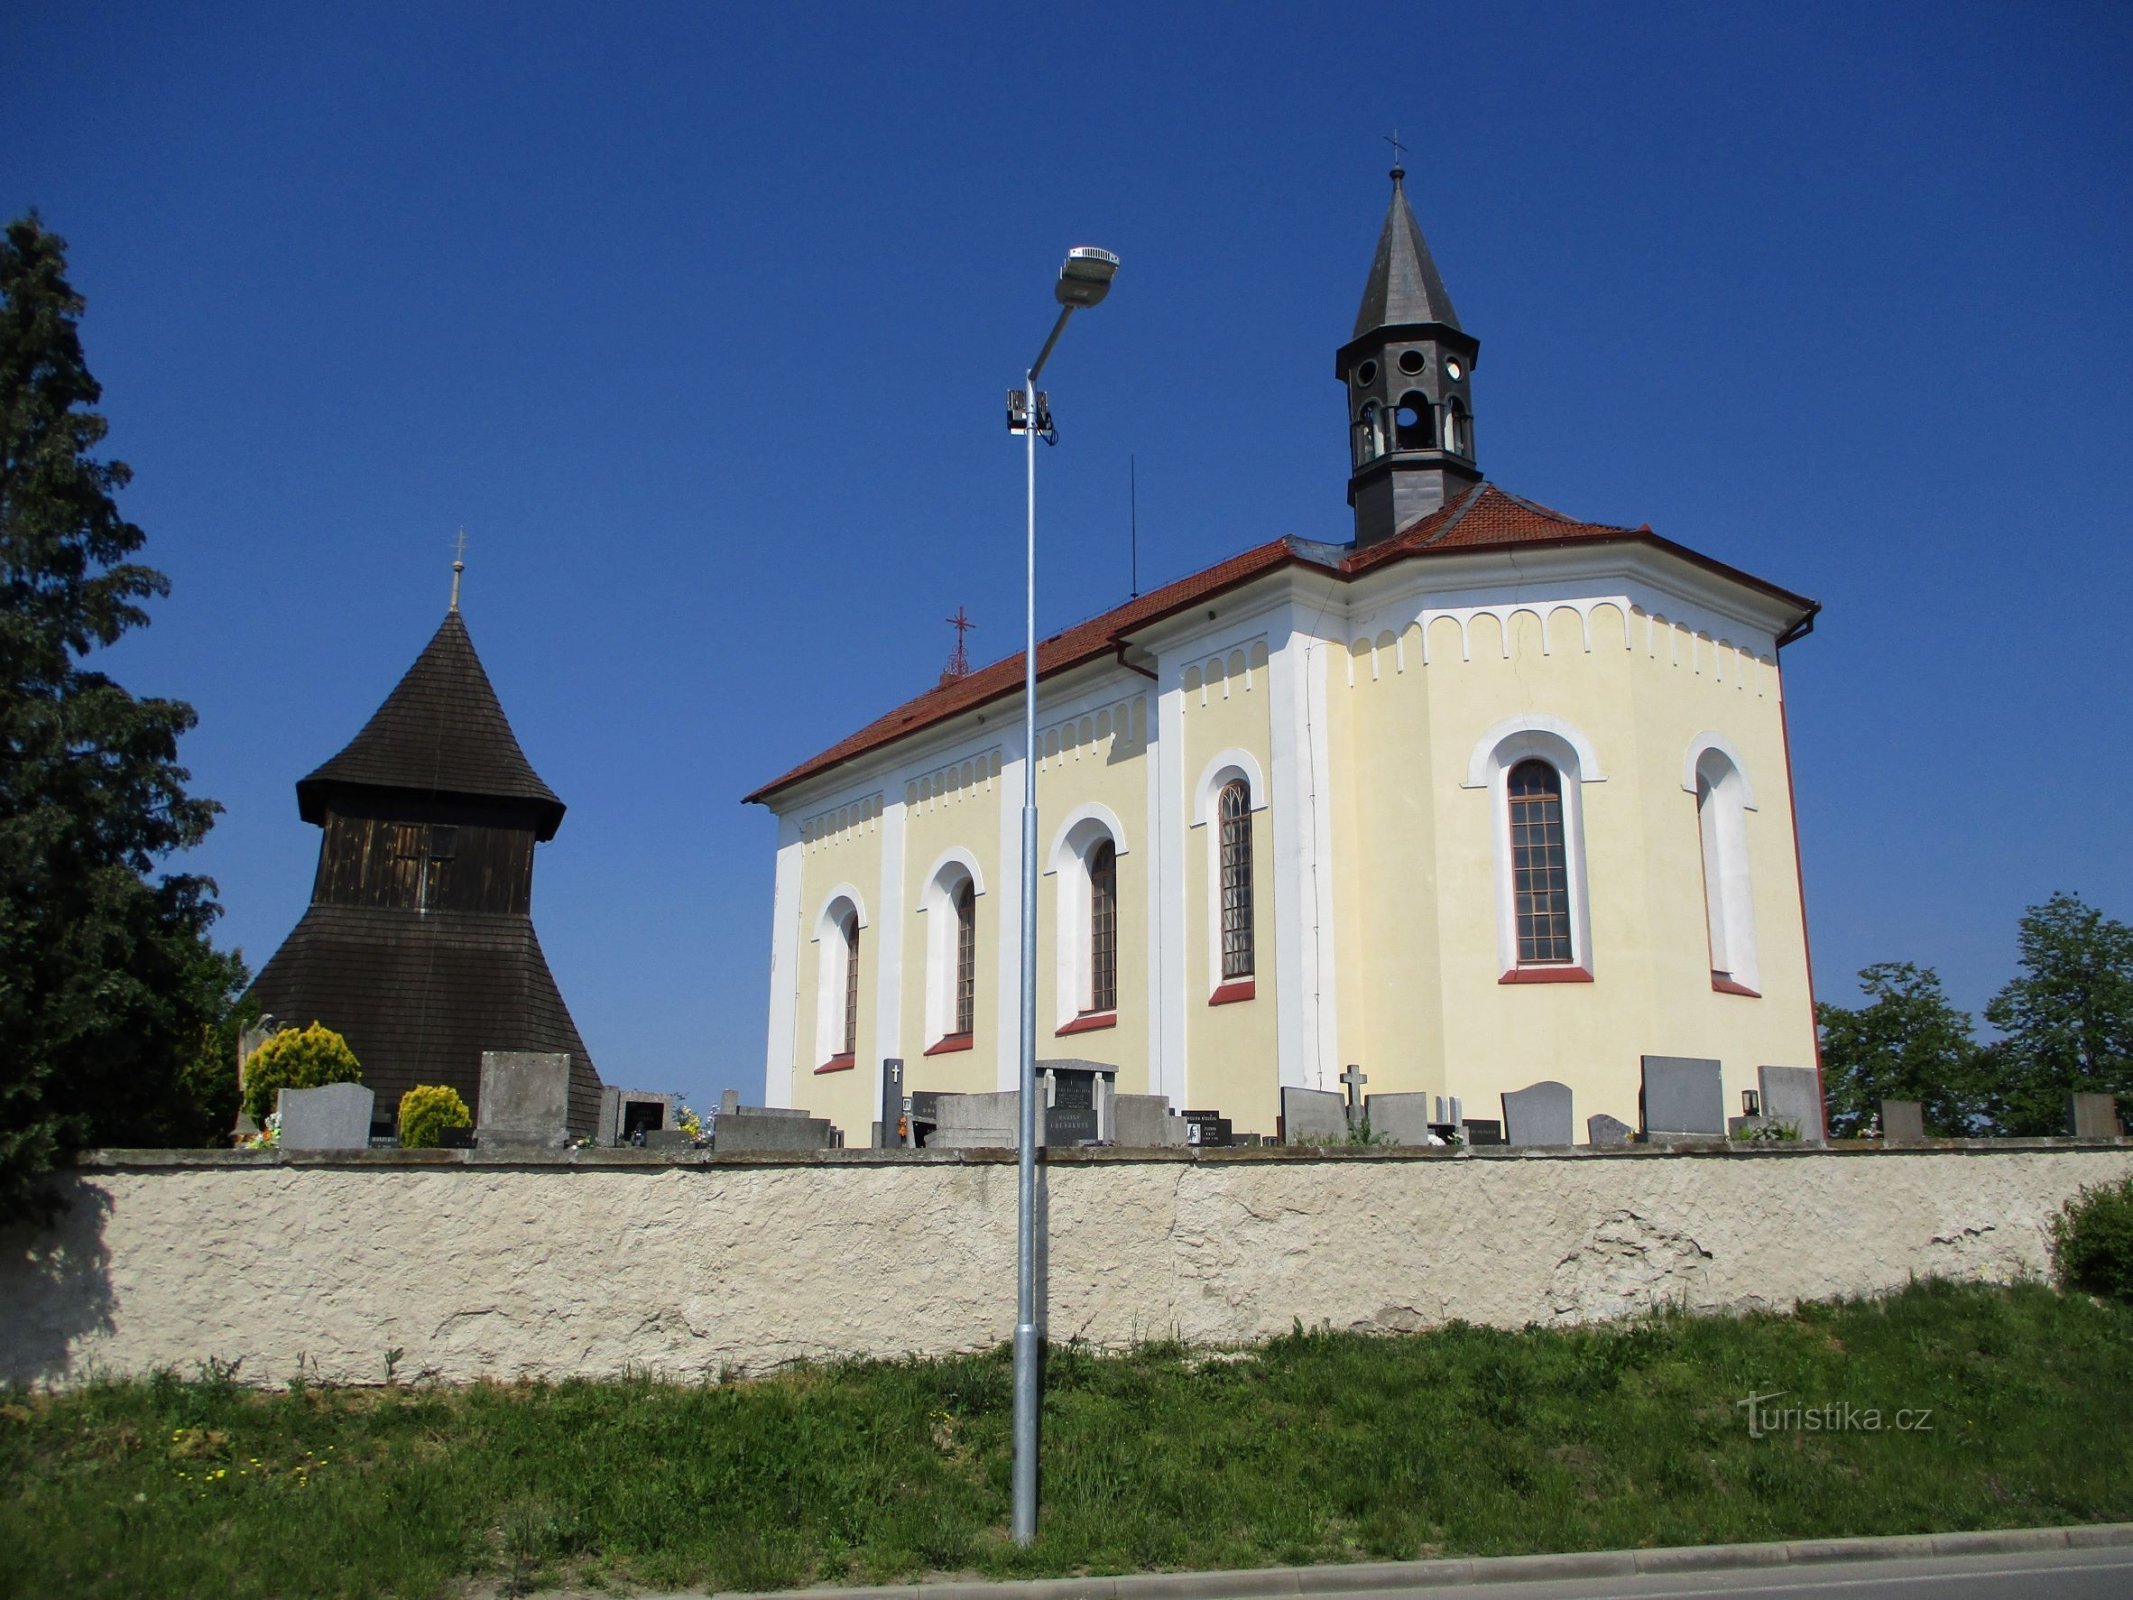 Dzwonnica i kościół św. Wacława (Horní Ředice, 16.5.2020)